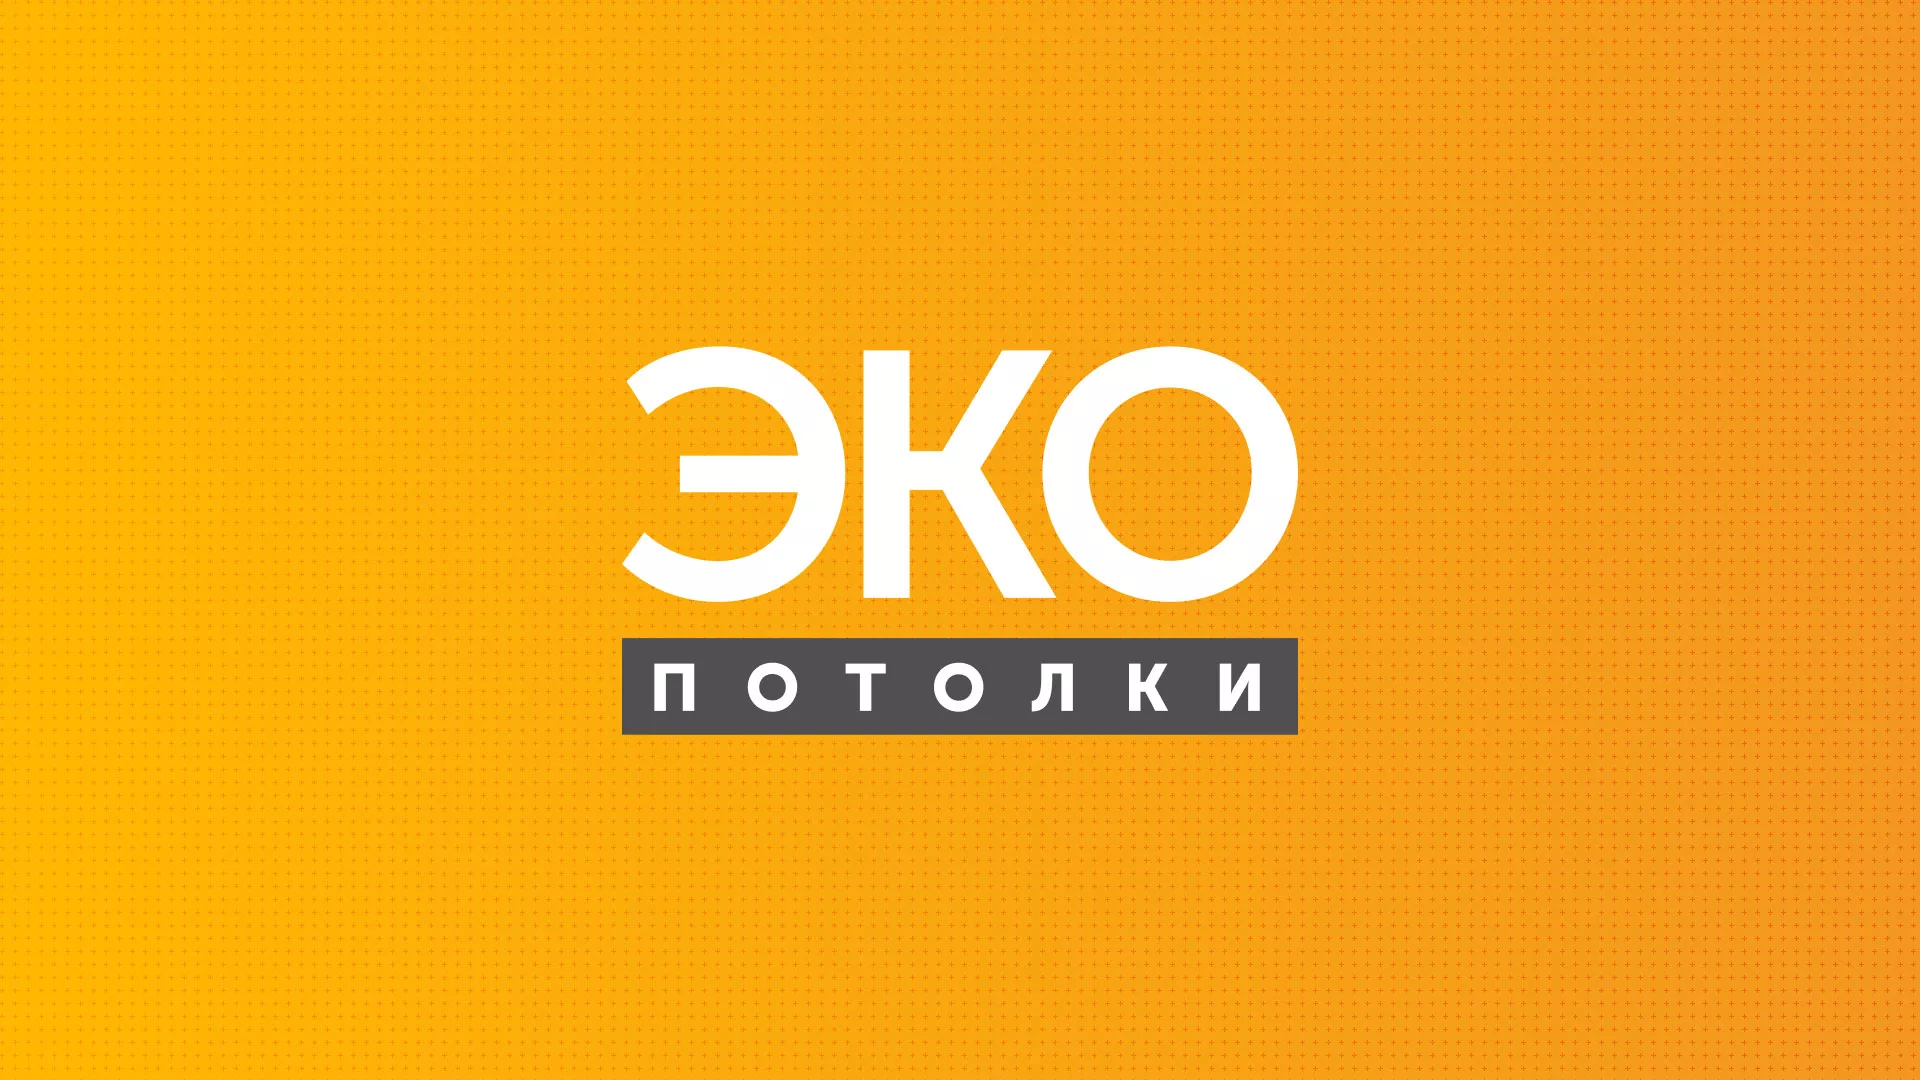 Разработка сайта по натяжным потолкам «Эко Потолки» в Ростове